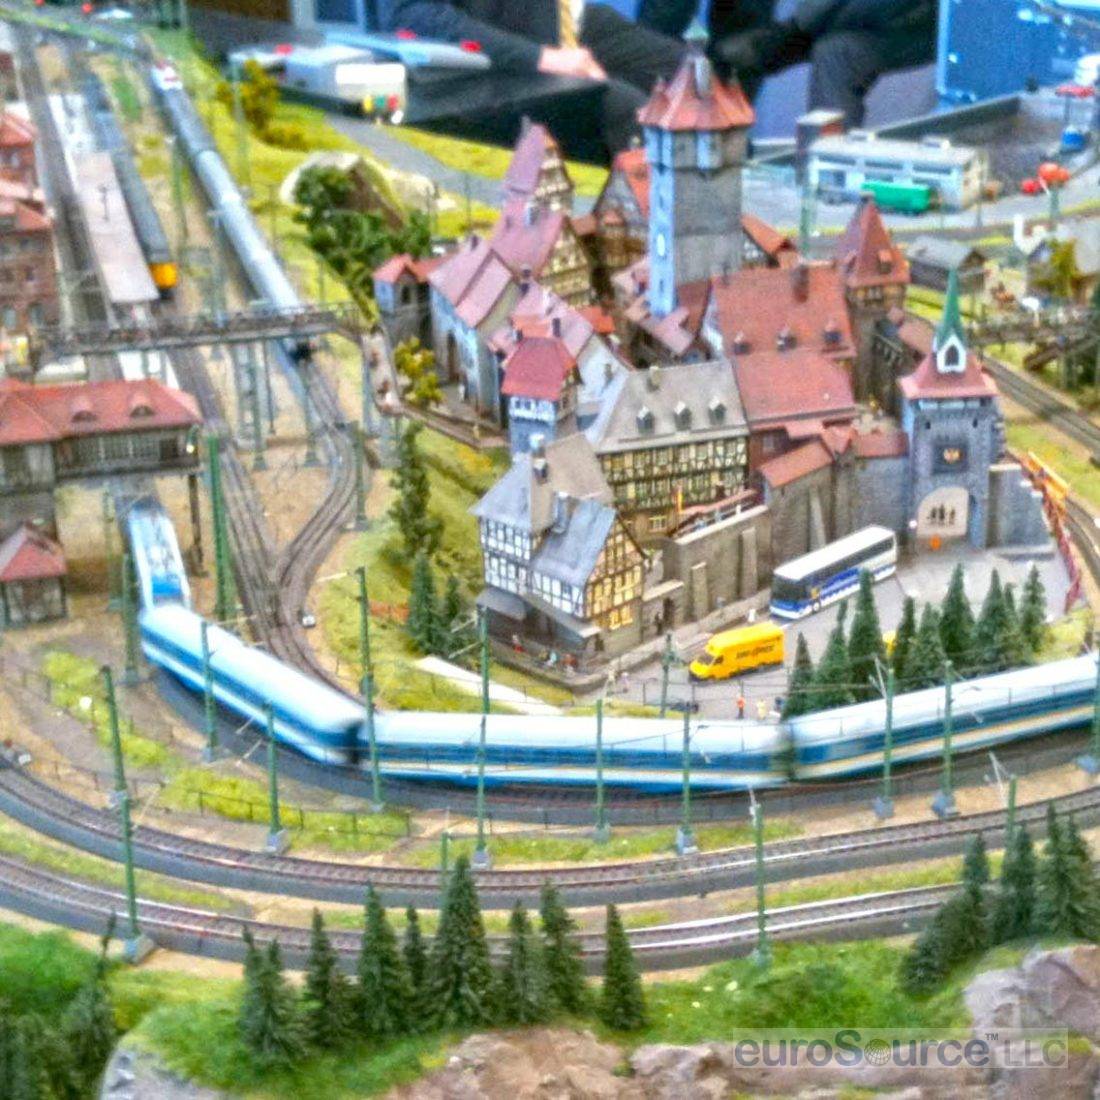 Marklin Train Layout Nuremberg 2012